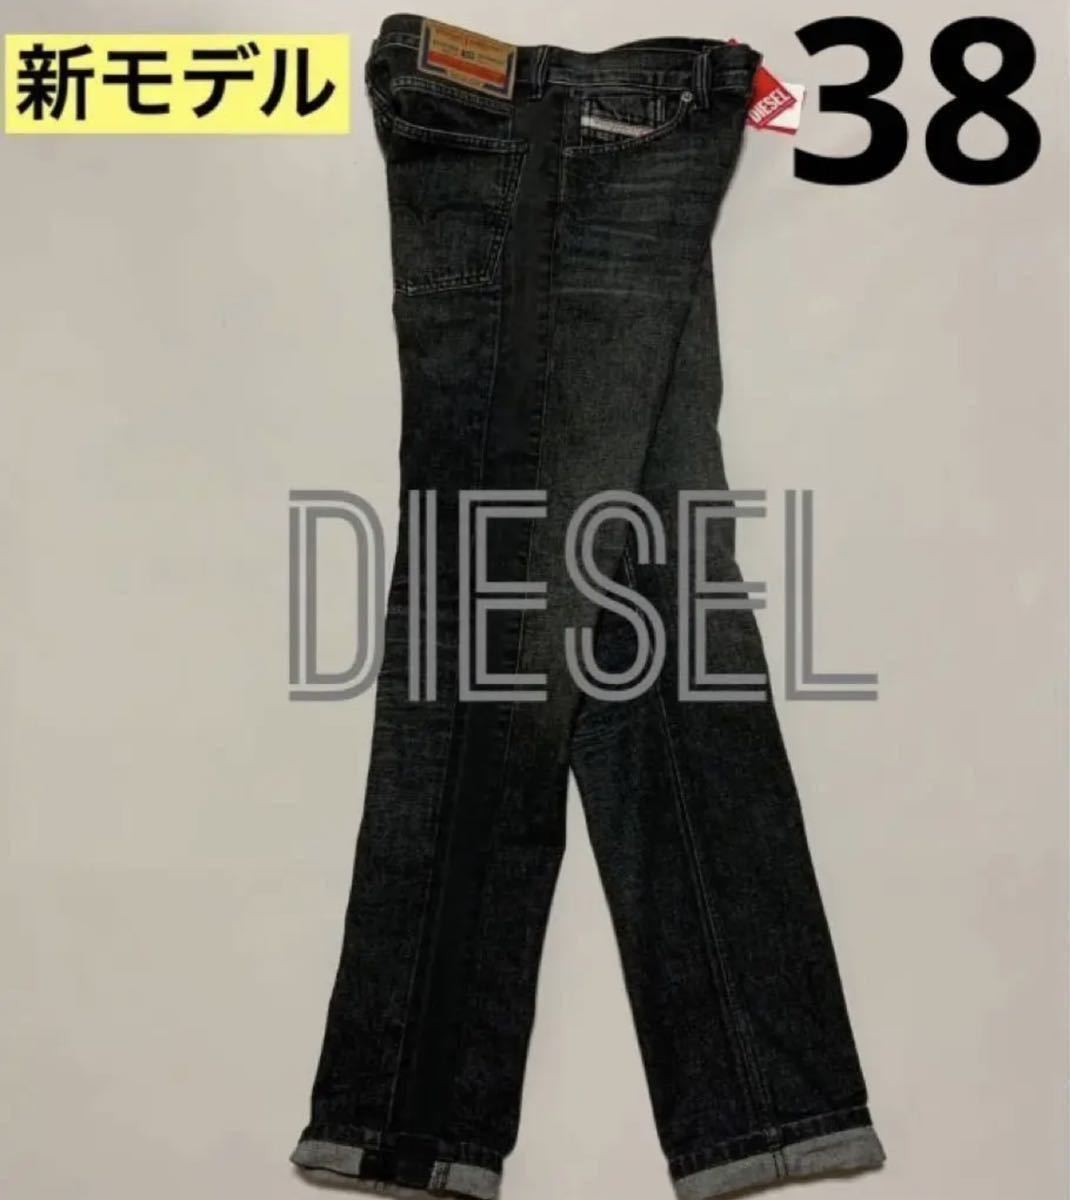 洗練されたDIESEL 1995 007g9 Straight Jeans W38 #DIESELMAKO www